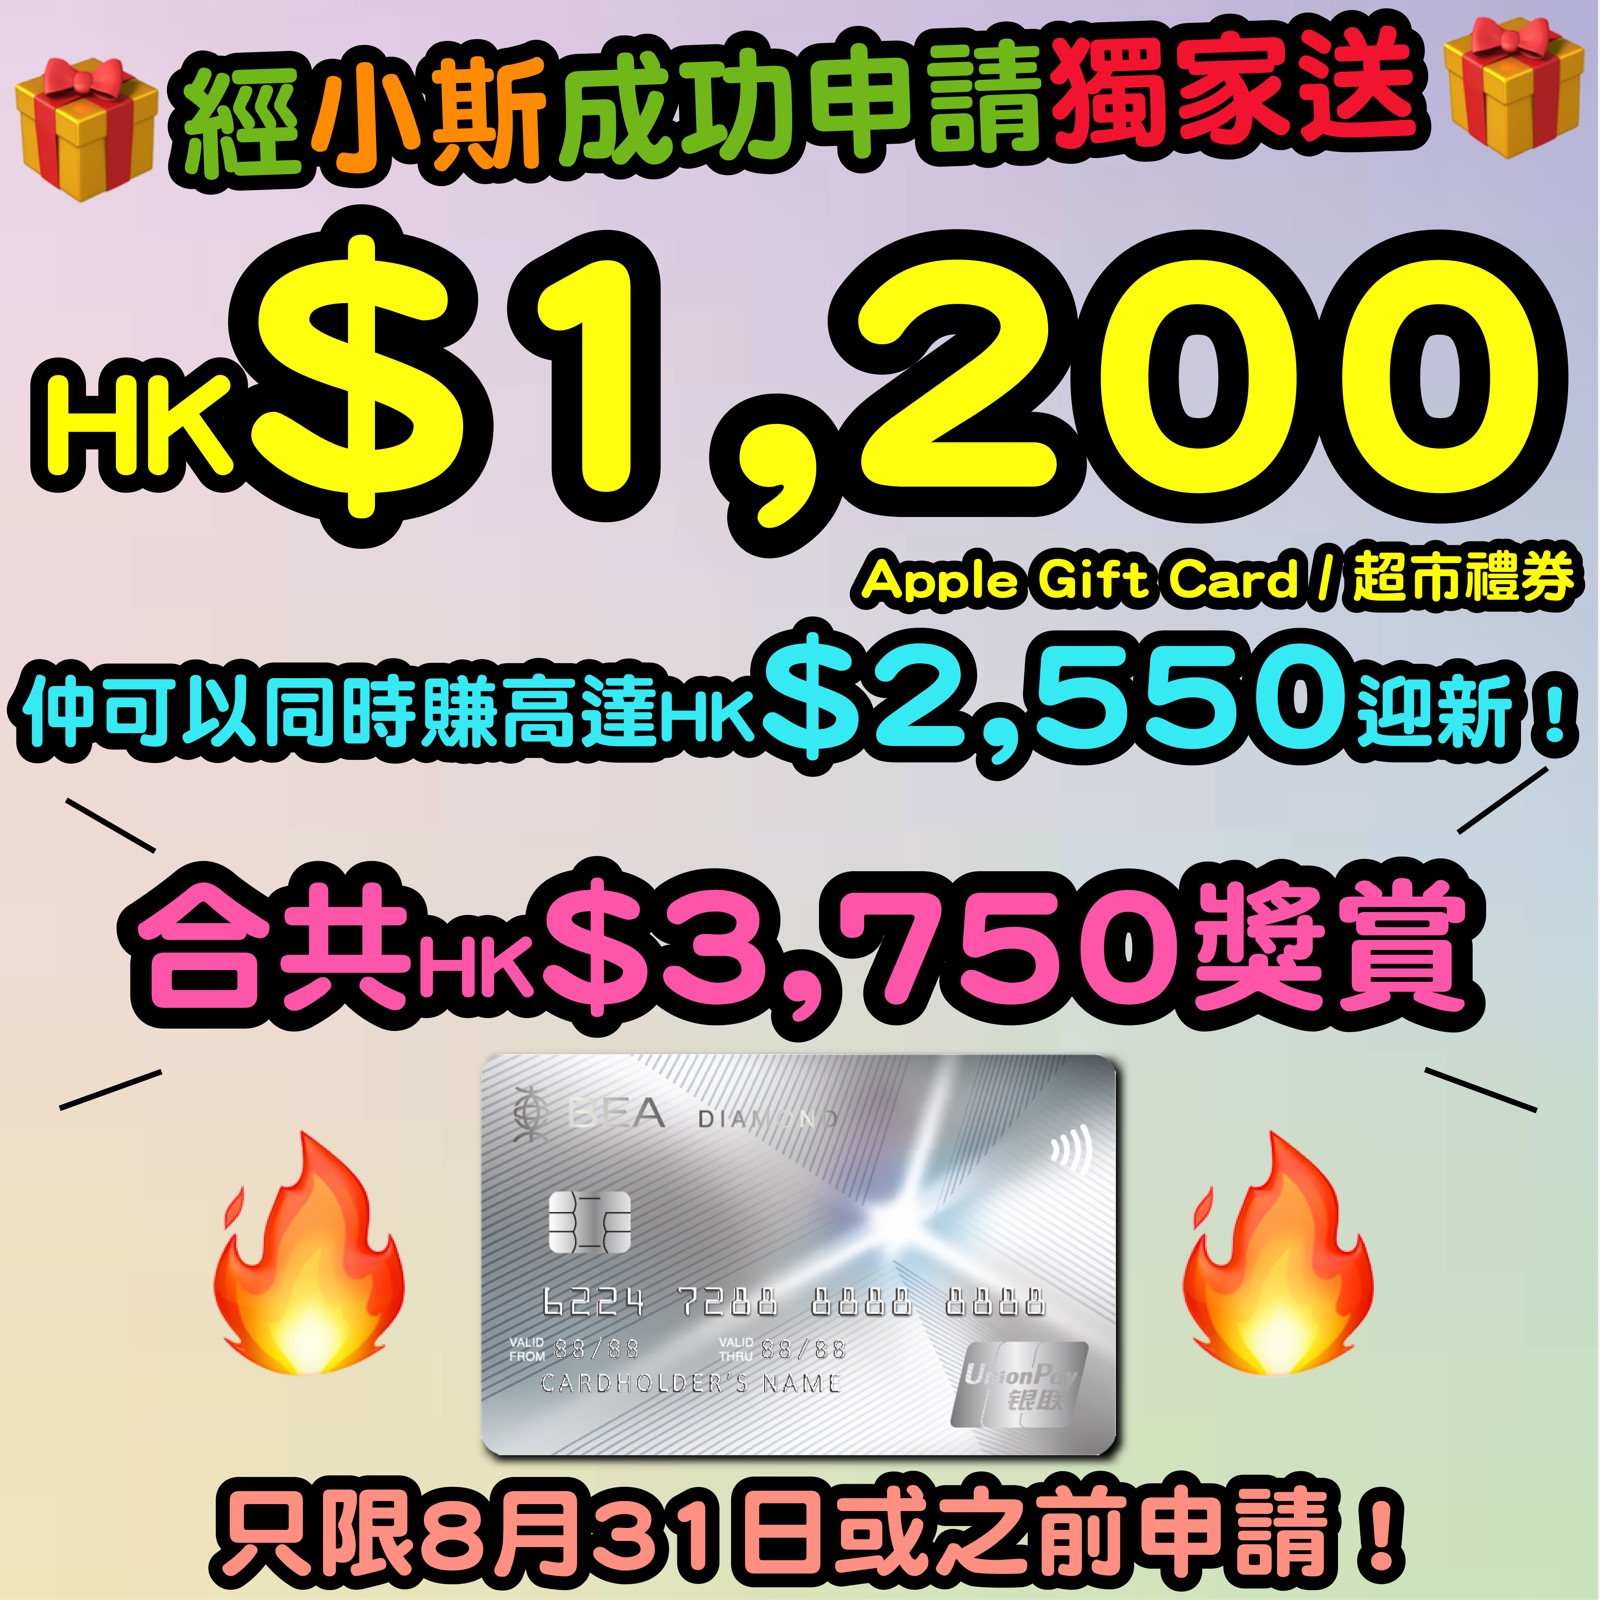 【🔥🔥東亞銀行銀聯雙幣鑽石信用卡小斯優惠😍😍】11月30日或之前，新客戶經小斯申請有獨家HK$1,200 Apple Gift Card 或 超市禮券！仲可以同時賺高達HK$2,550迎新！合共HK$3,750獎賞！